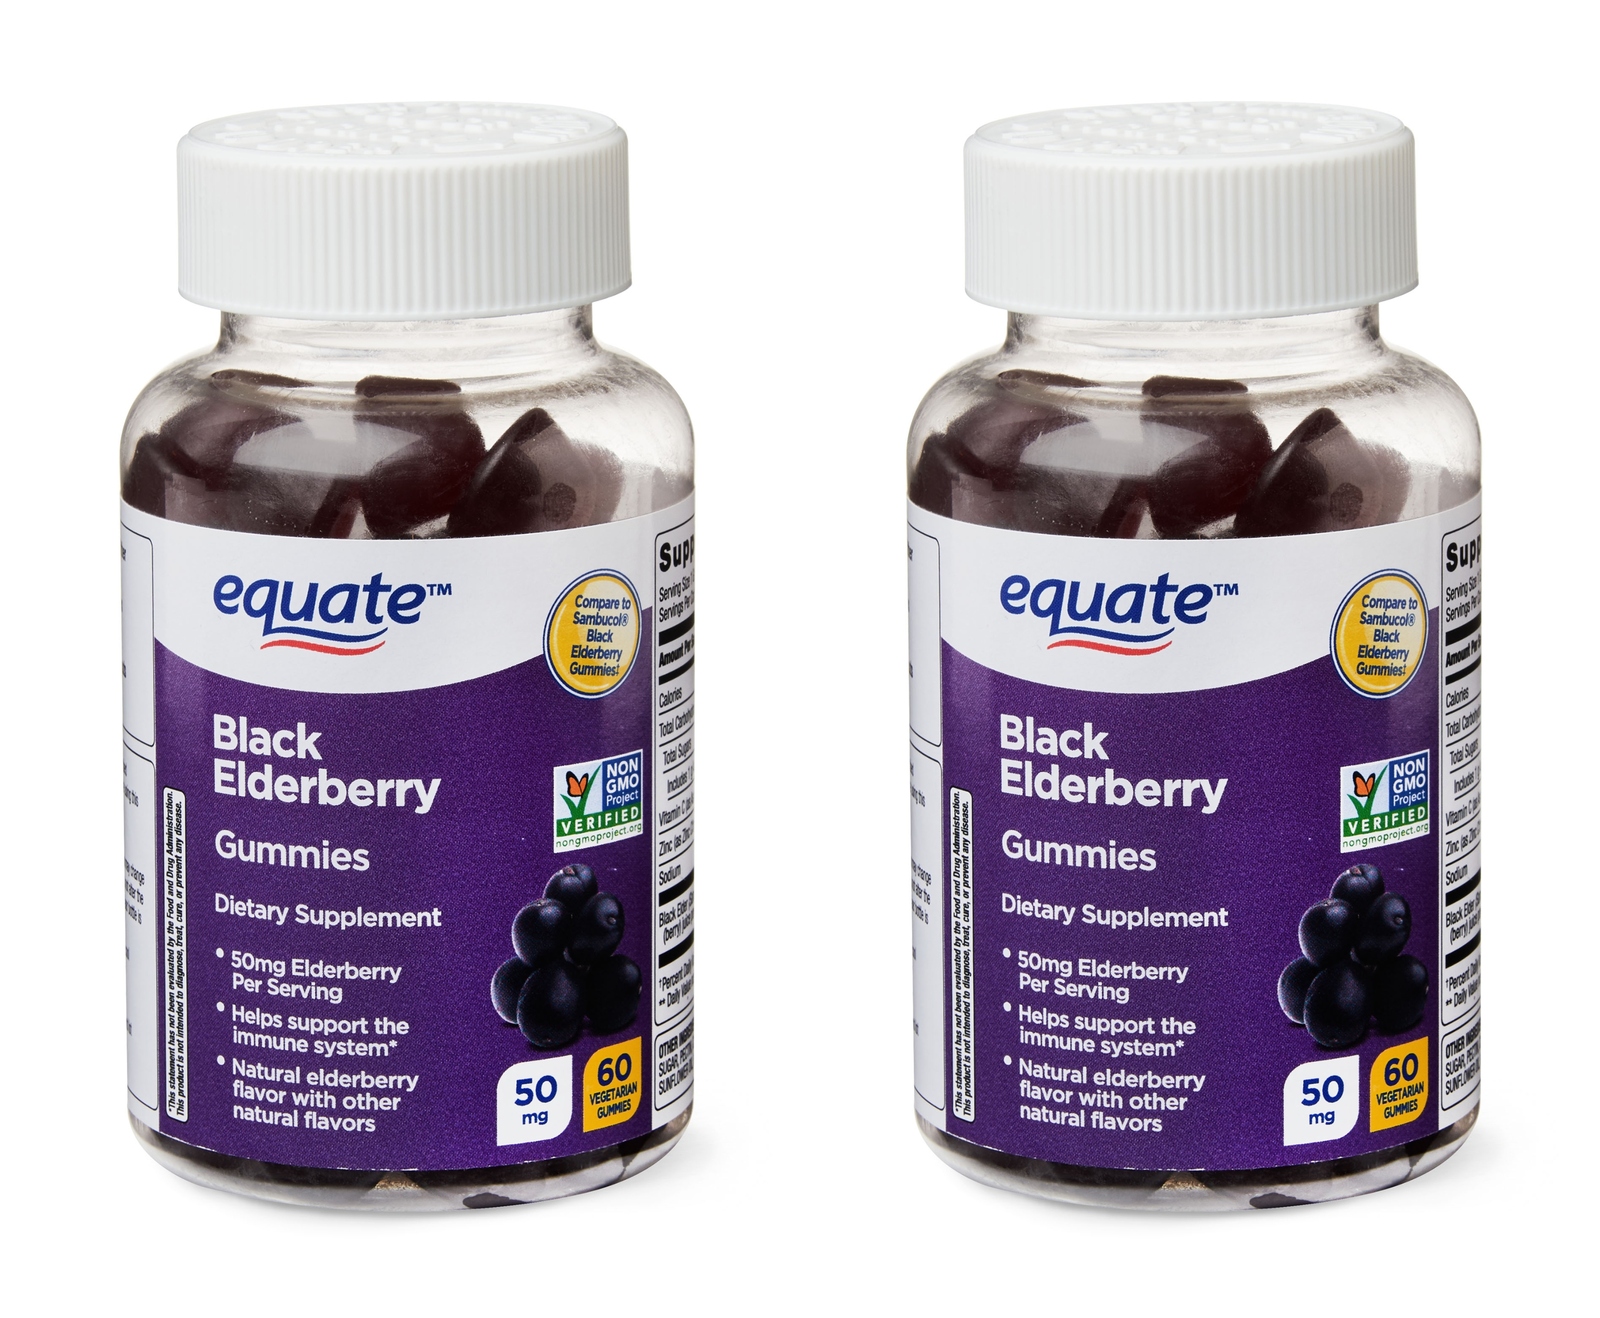 x2 Bottles Equate Elderberry 50mg Immune Health Adult Gummy 60 Per Bottle - $29.99